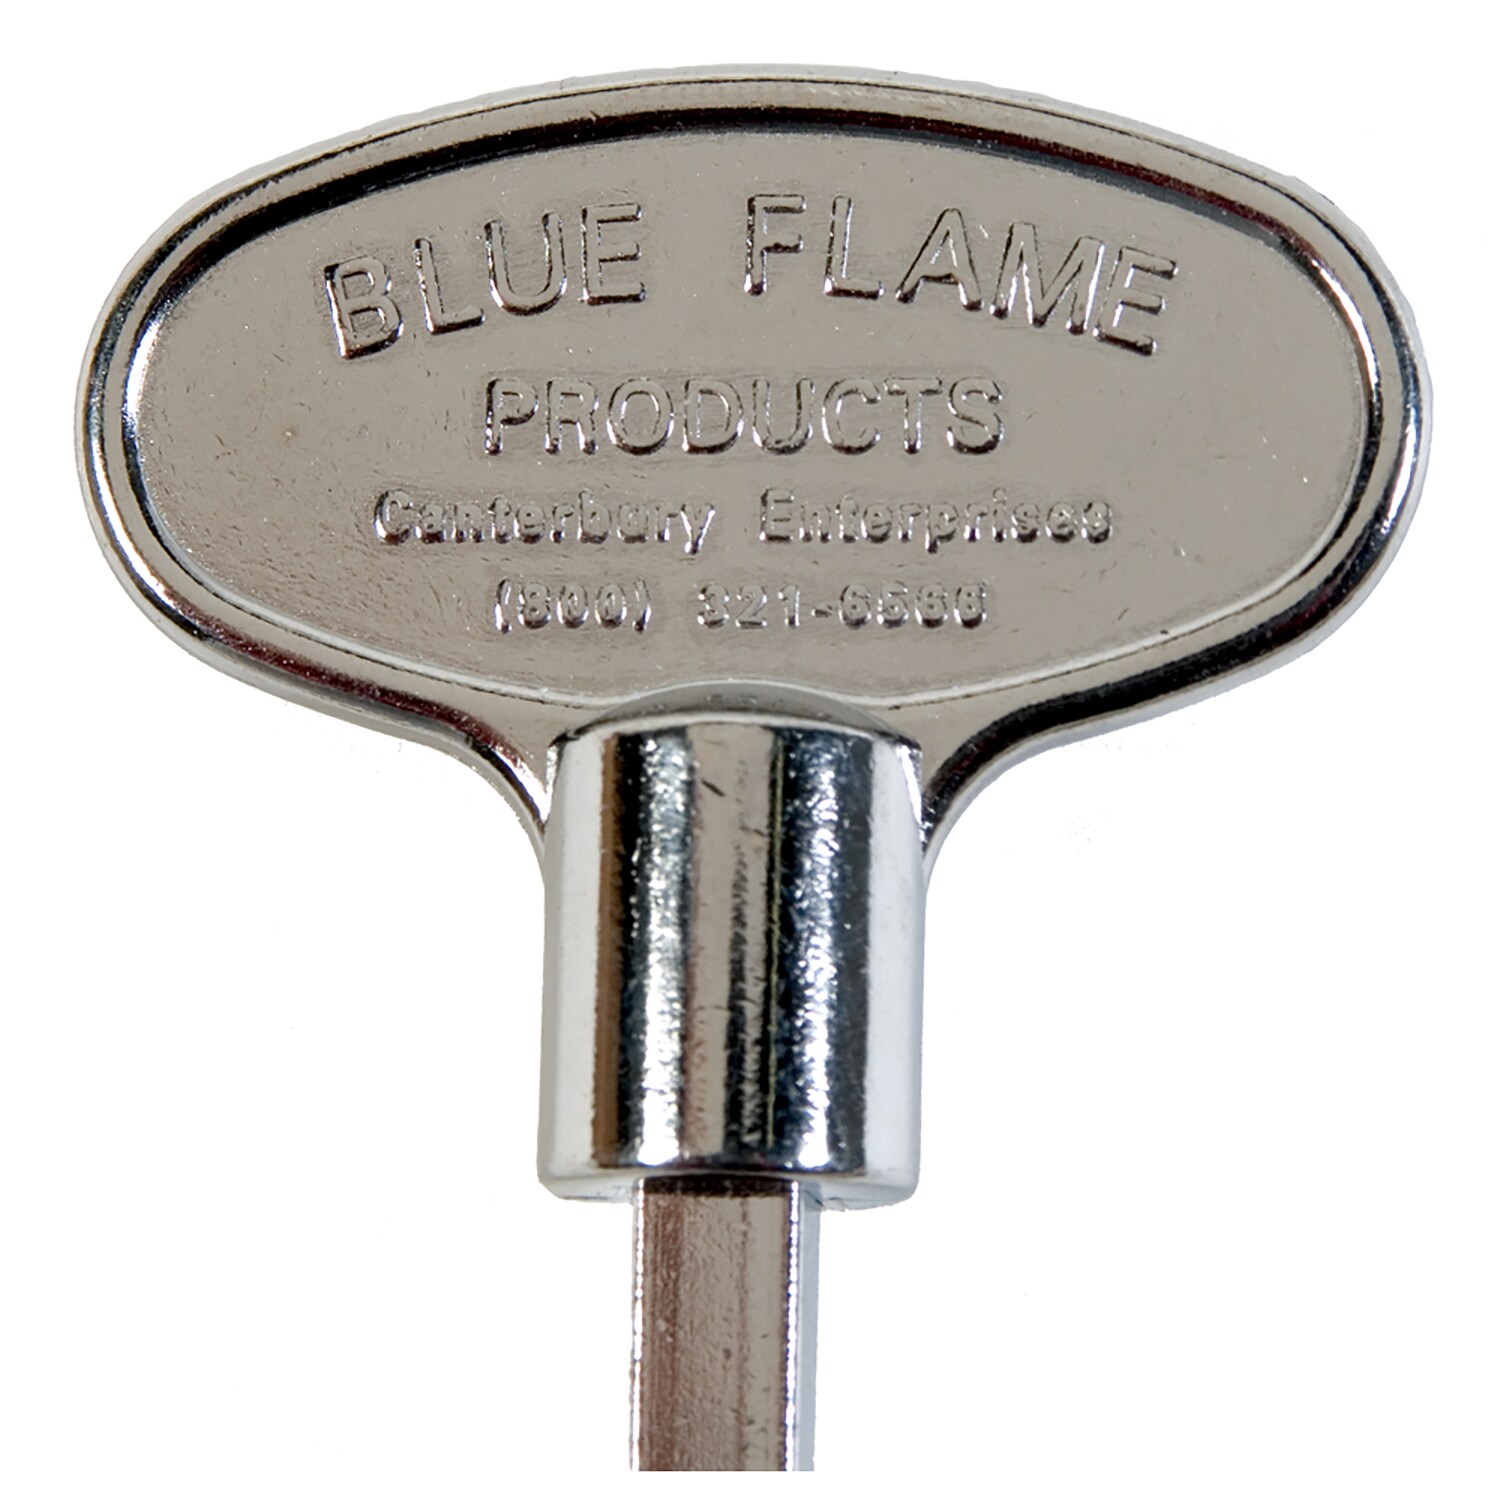 Dante Blue Flame Fireplace Chrome 12" Gas Valve Key for 1/4"  5/16" Stem New 